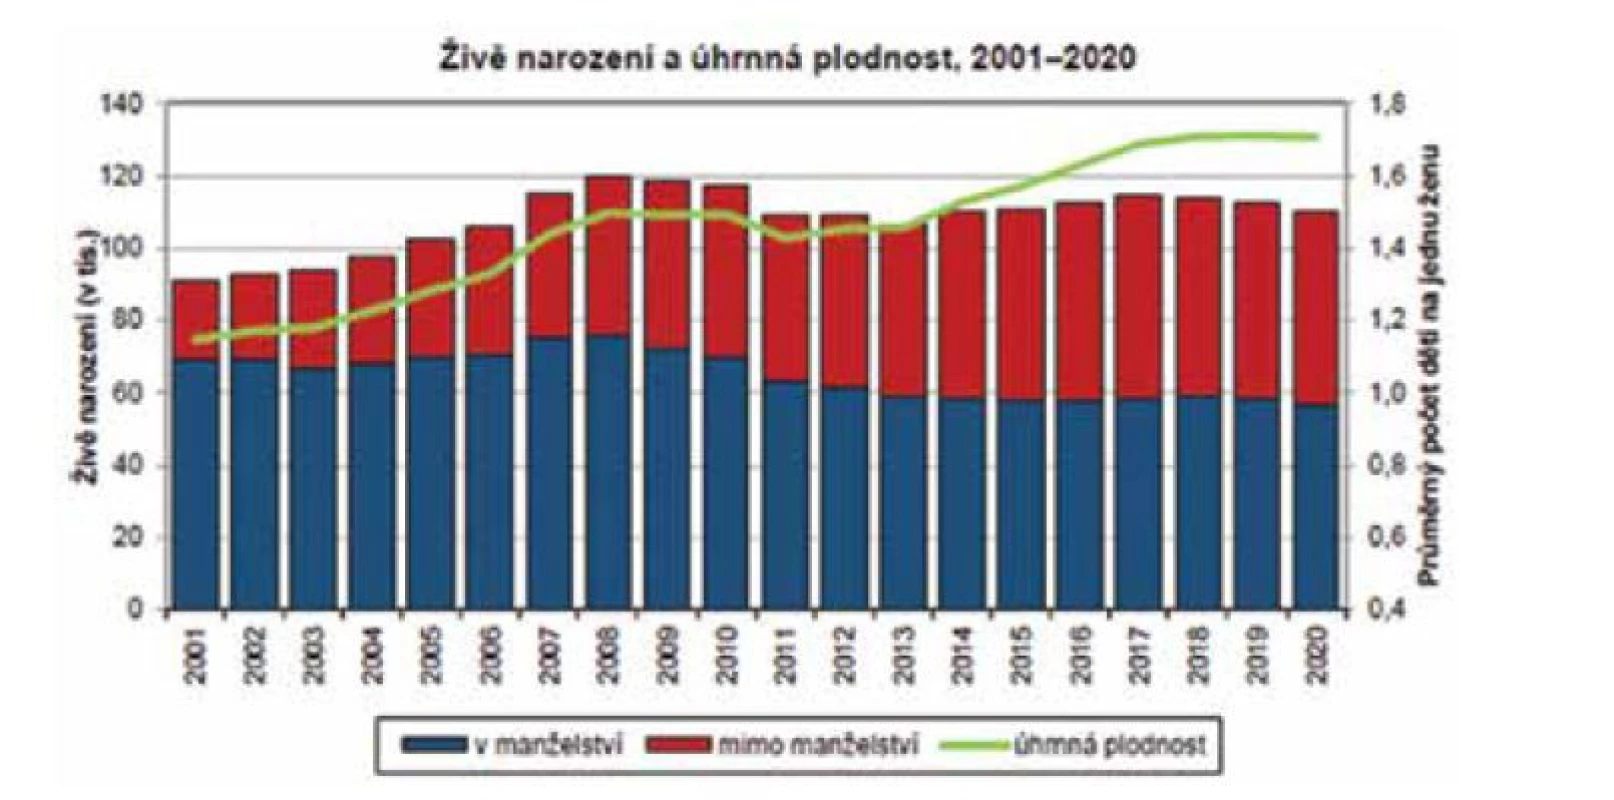 Živě narození a úhrnná plodnost v ČR v letech 2001–2020